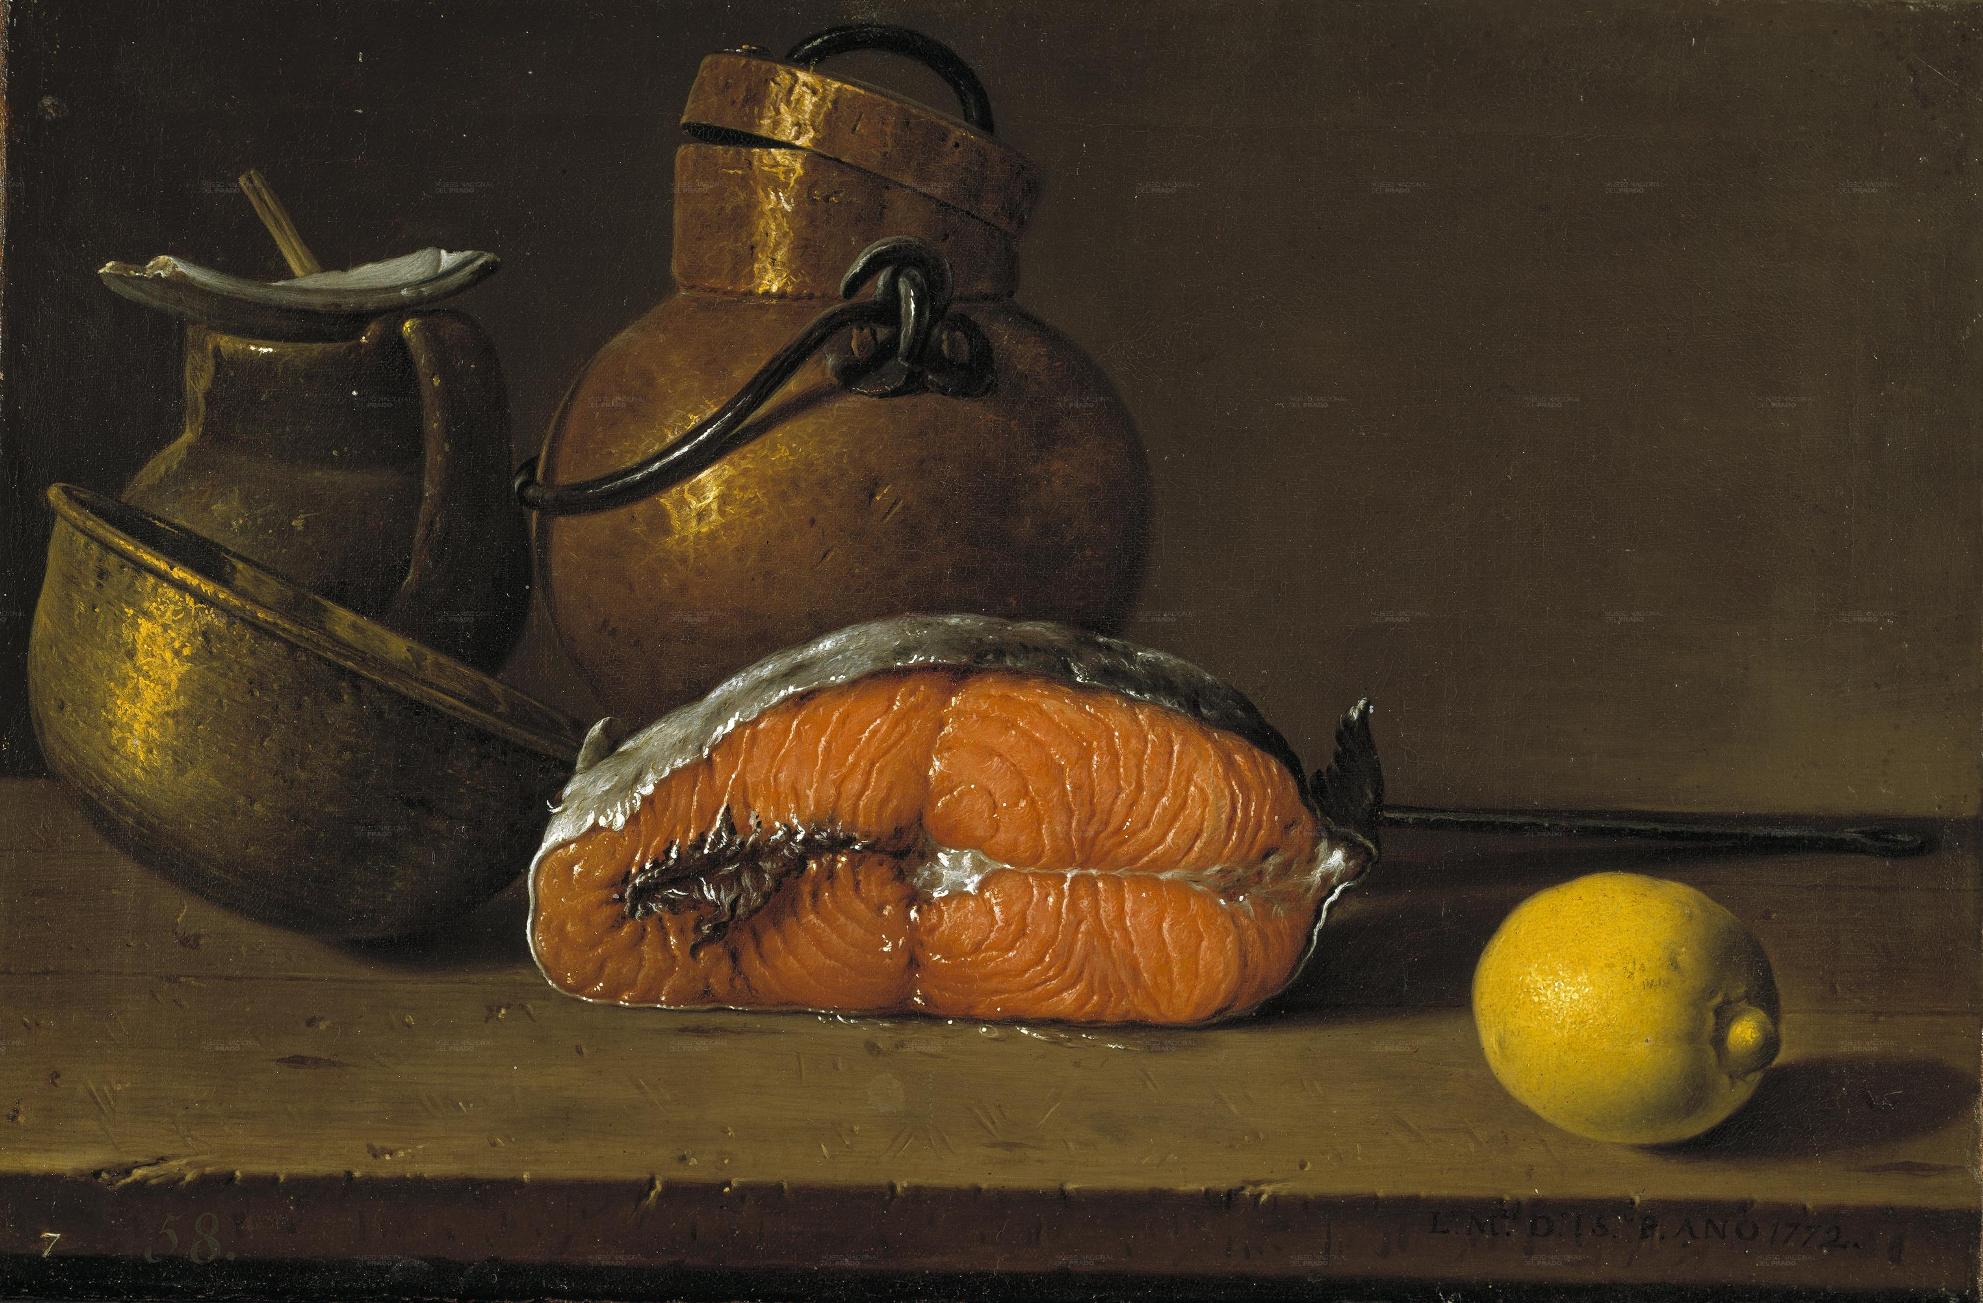 Meléndez. Bodegón: un trozo de salmón, un limón y tres vasijas, 1772